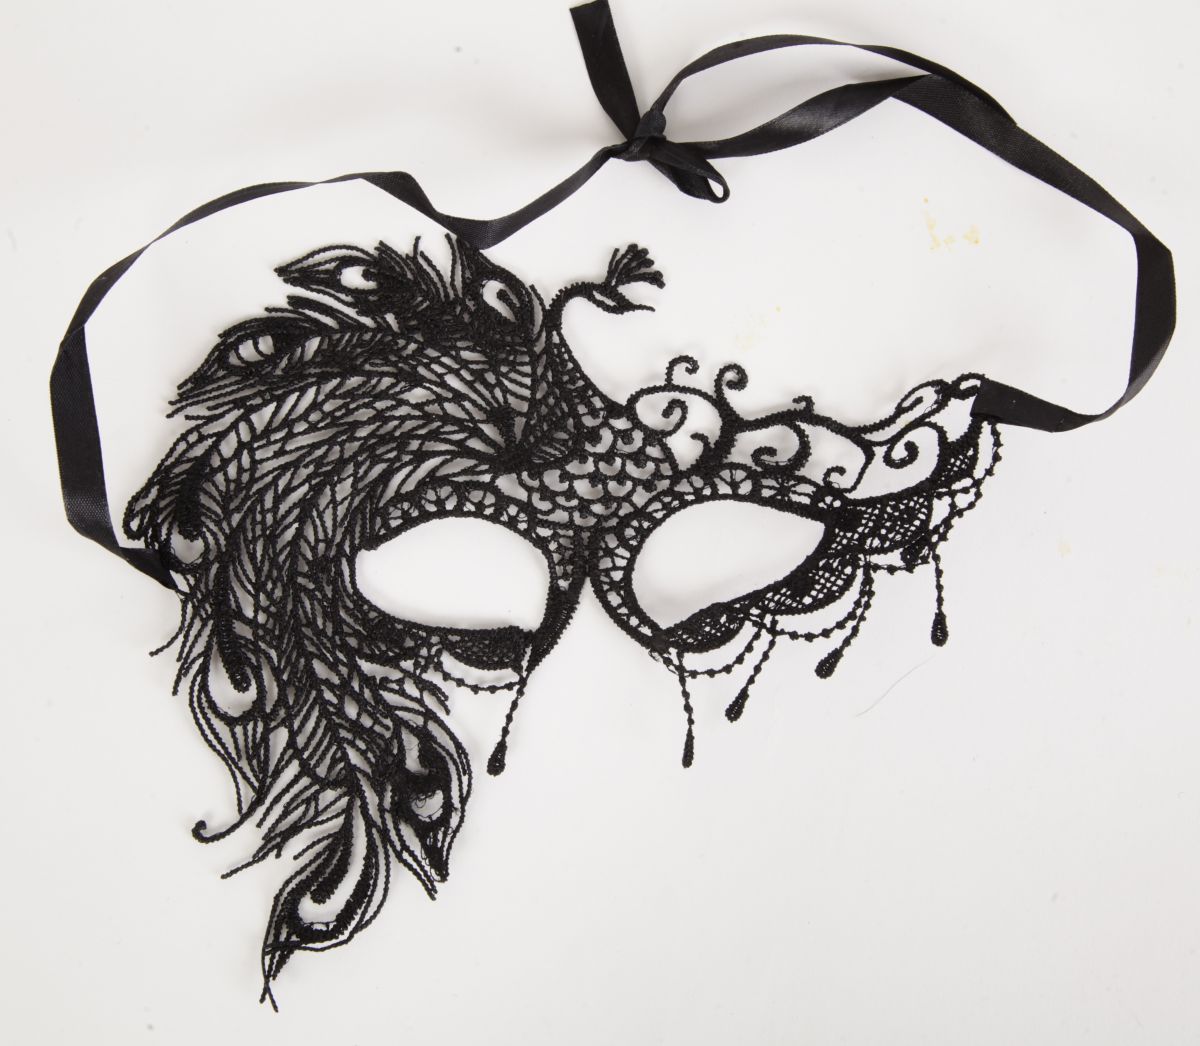 Кружевная маска в венецианском стиле с узором жар-птицы. Завязывается на атласные ленты. Упаковка - бумажный пакет. Размеры - 22 х 18 см.